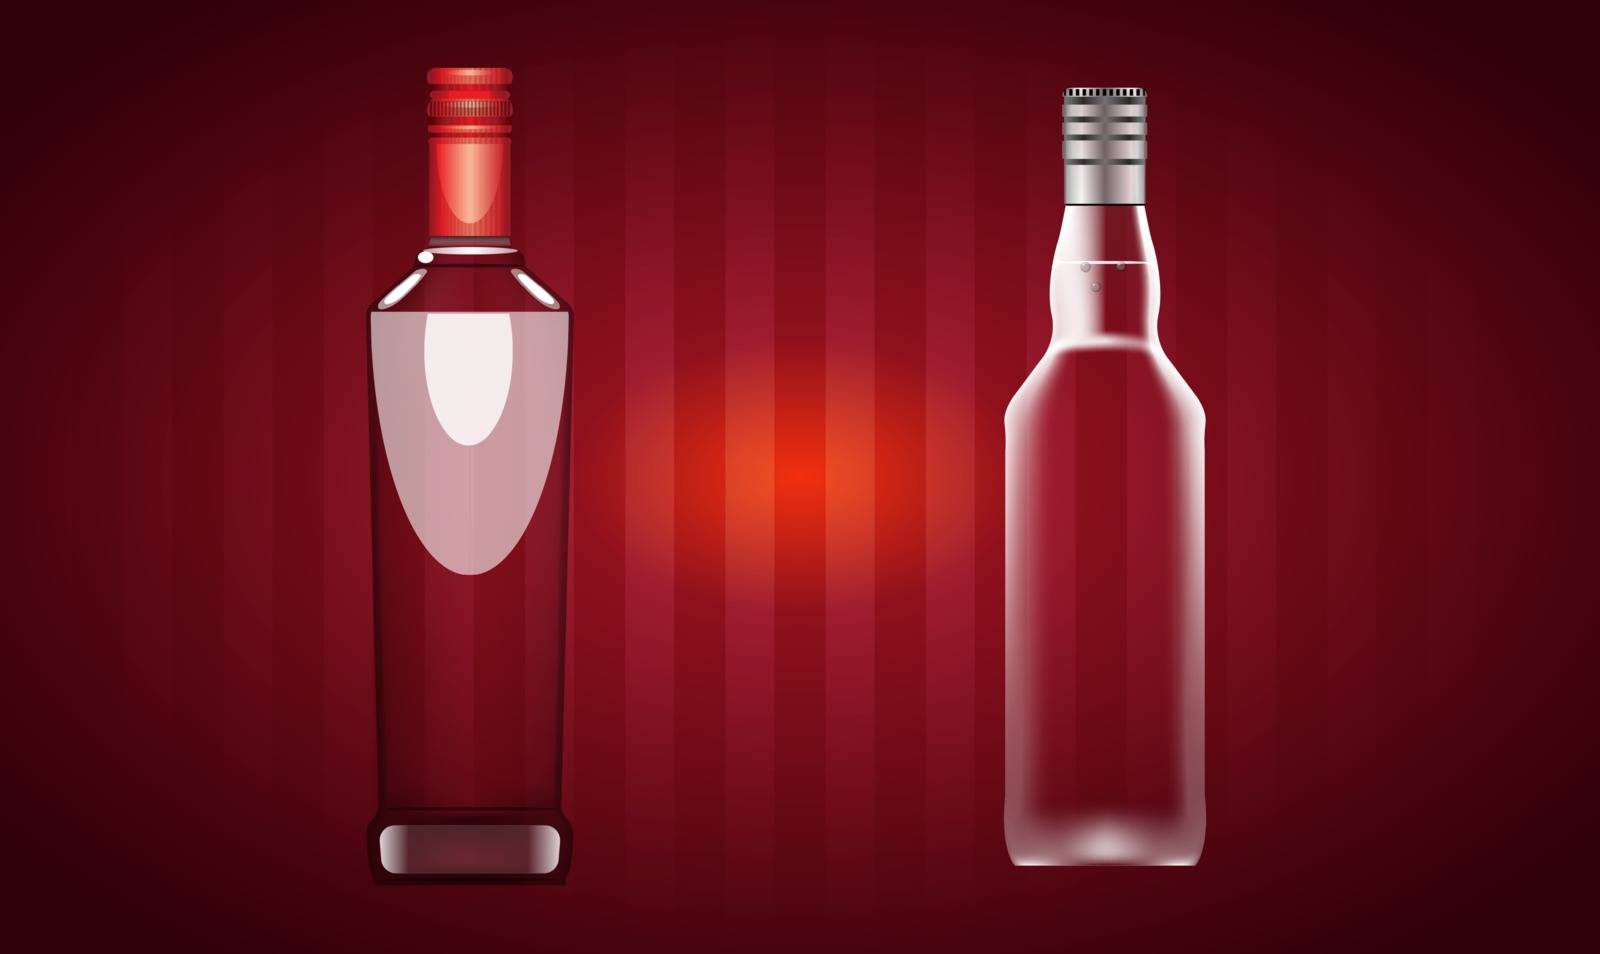 mock up illustration of vodka bottle on abstract background